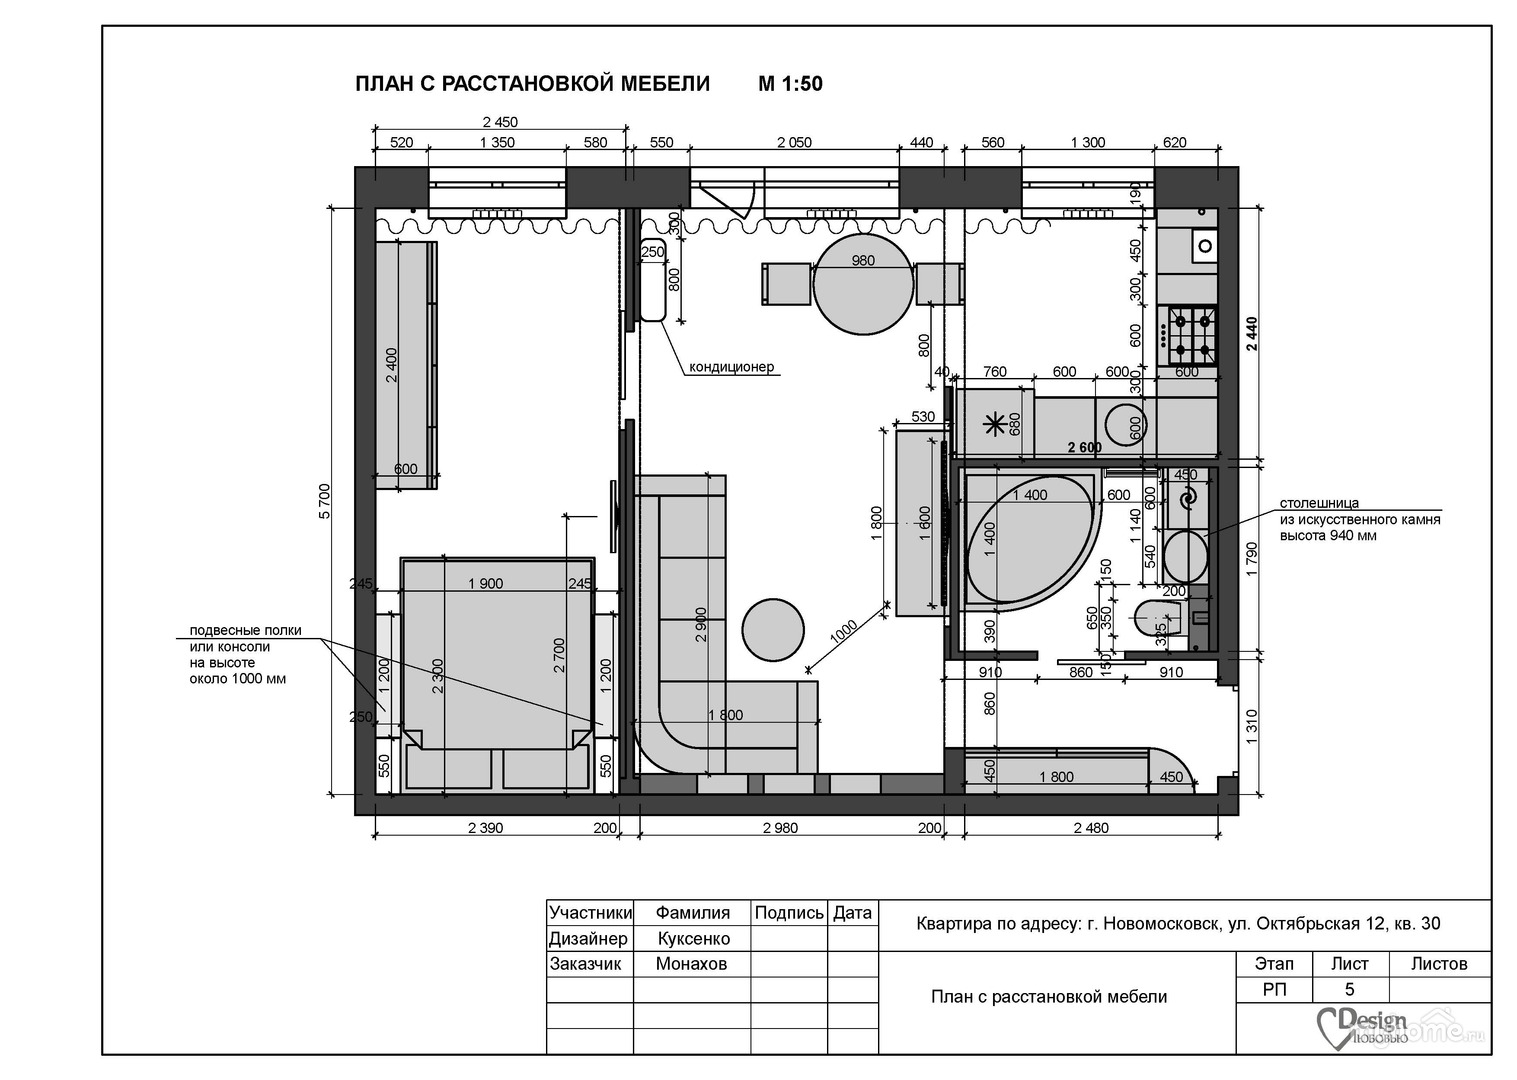 Дизайн проекты квартир готовые: решения для идеального интерьера